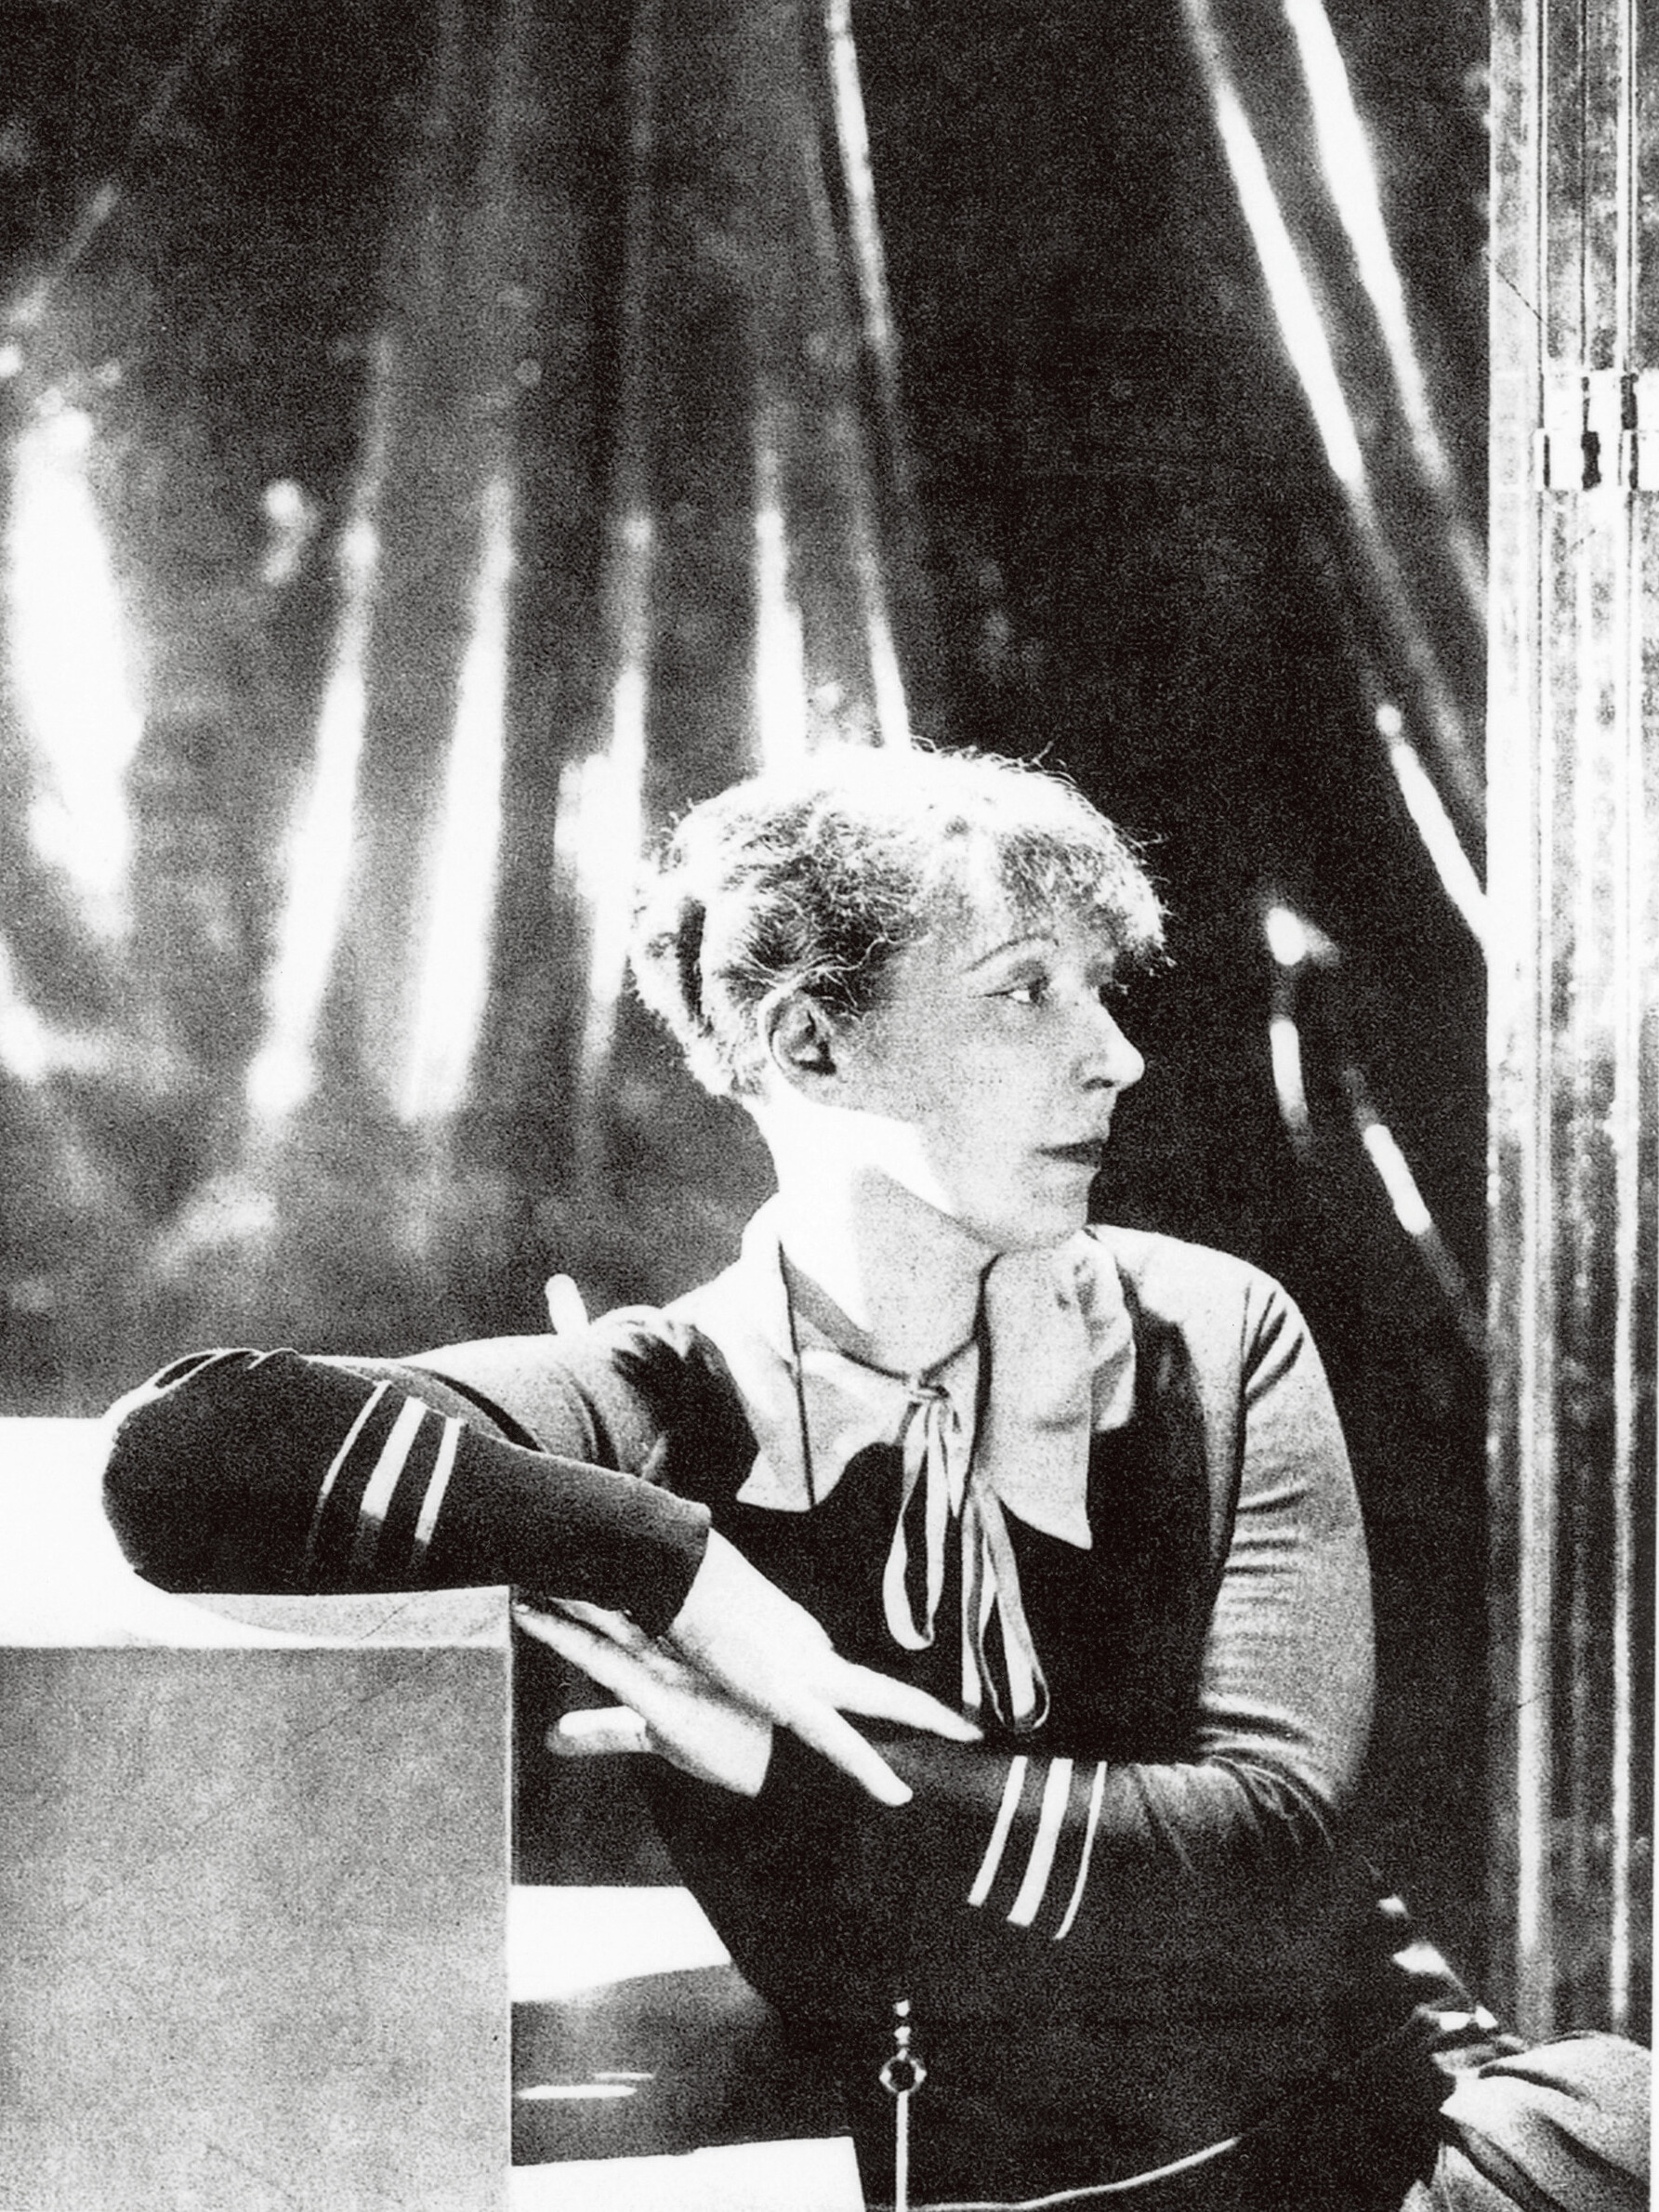 セシル・ビートン 《お気に入りのドレスでポーズをとるローランサン》 1928年頃 マリー・ローランサン美術館 ⓒMusee Marie Laurencin